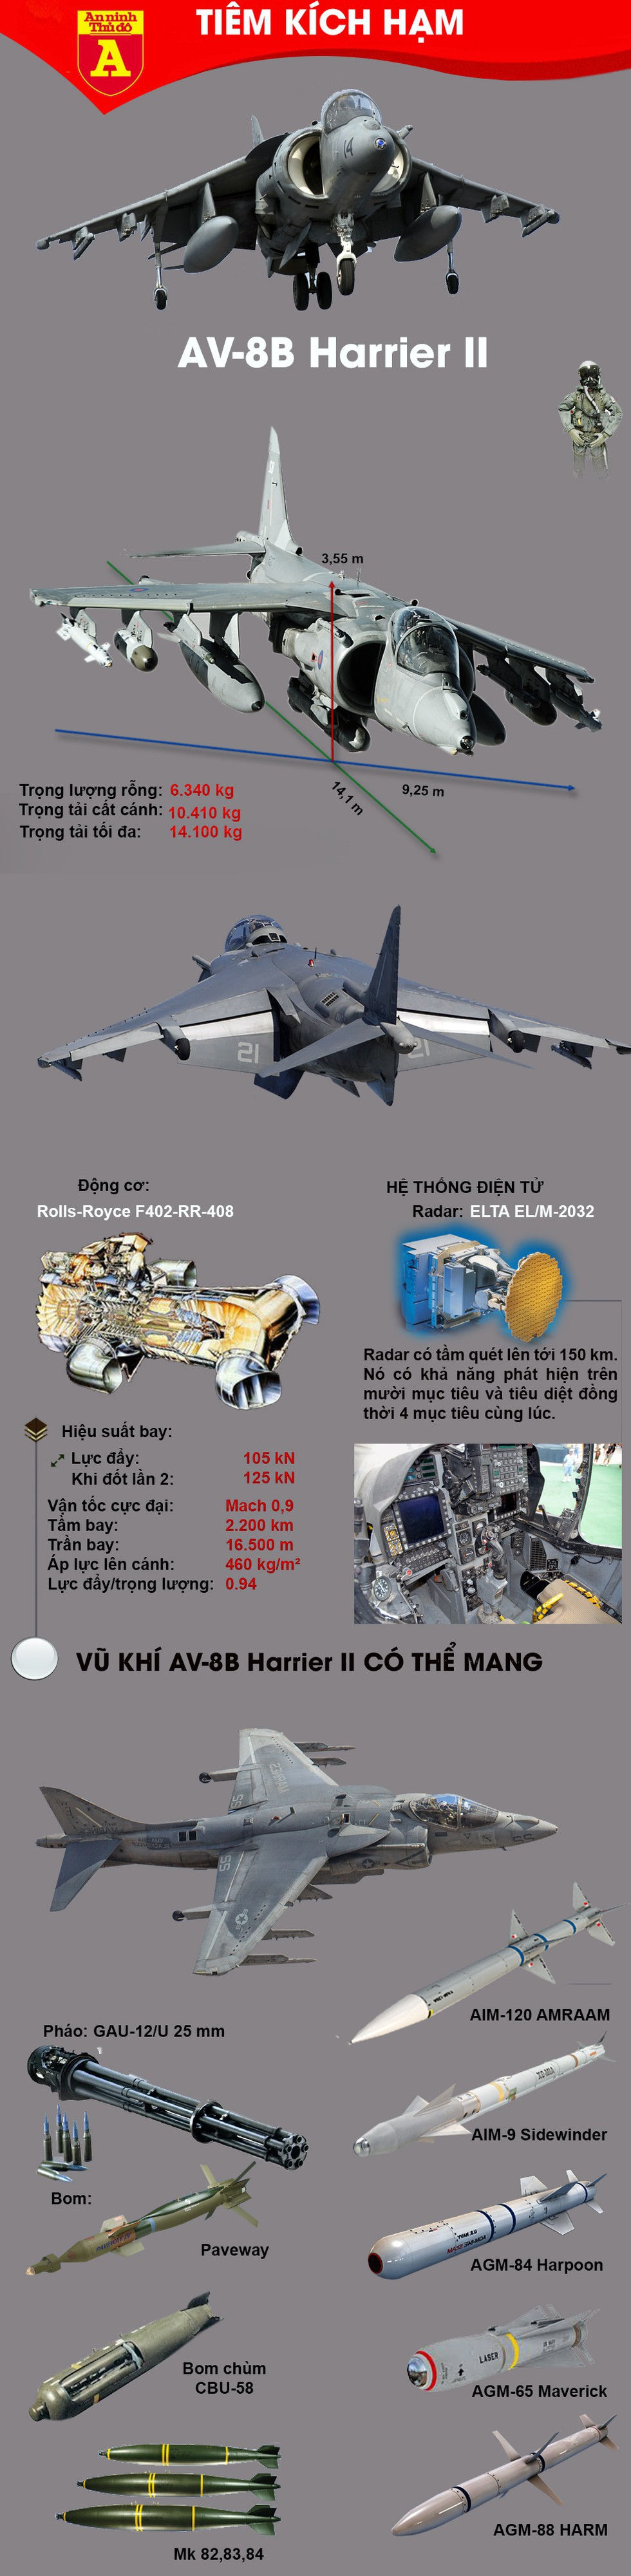 Tại sao Mỹ lại điều máy bay AV-8B Harrier II tới sát Iran?